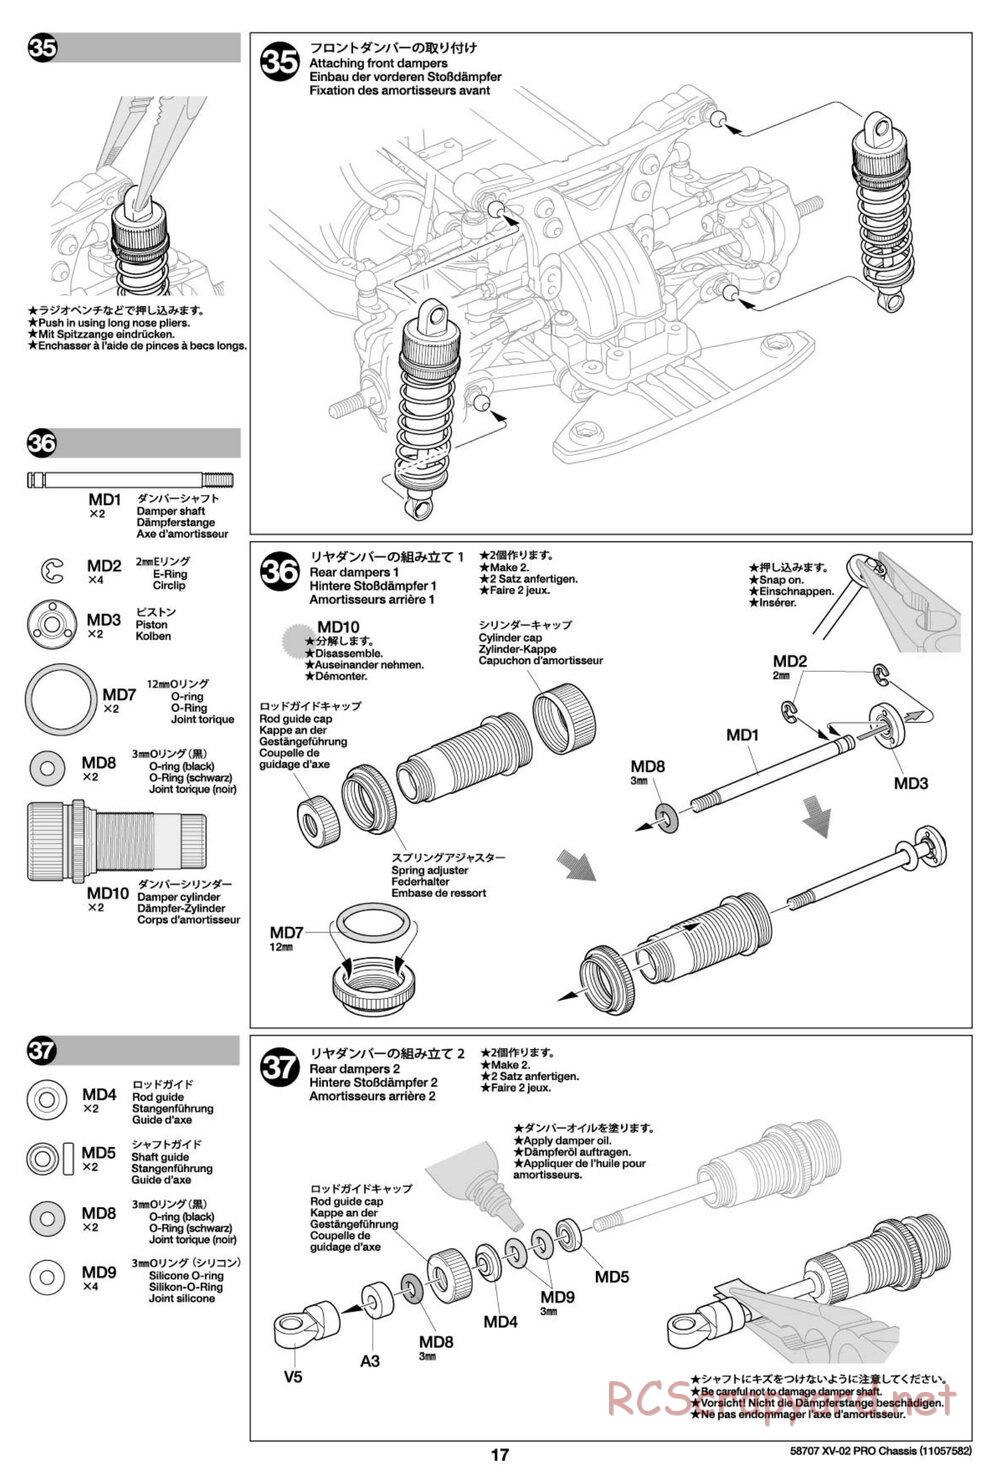 Tamiya - XV-02 Pro Chassis - Manual - Page 17